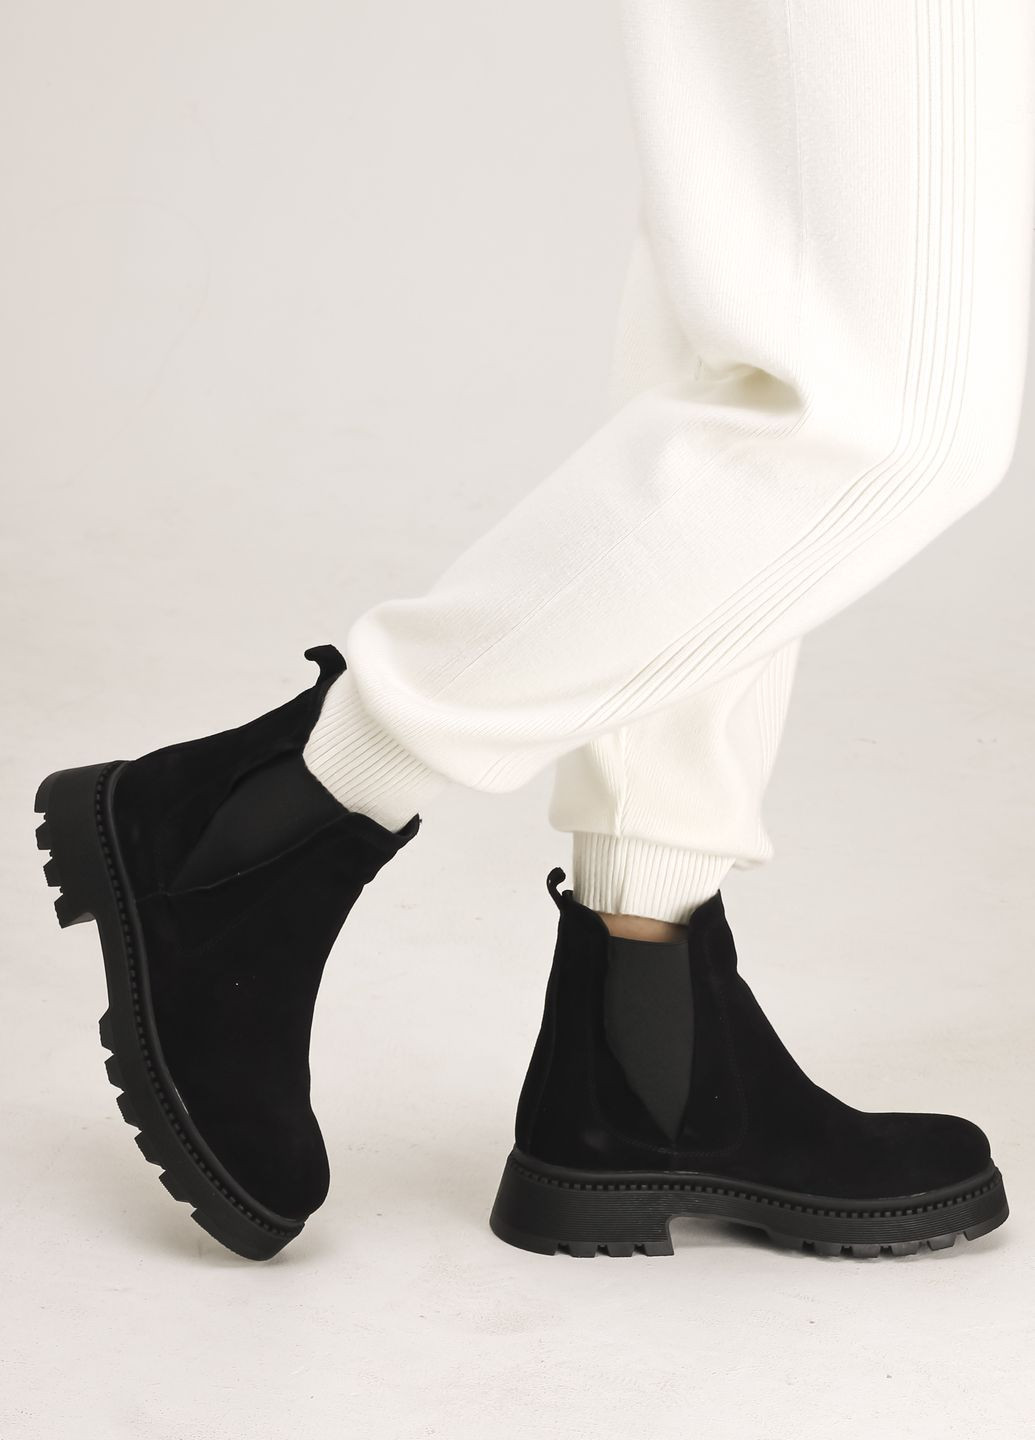 Зимние ботинки челси черные замша Teona без декора из натуральной замши